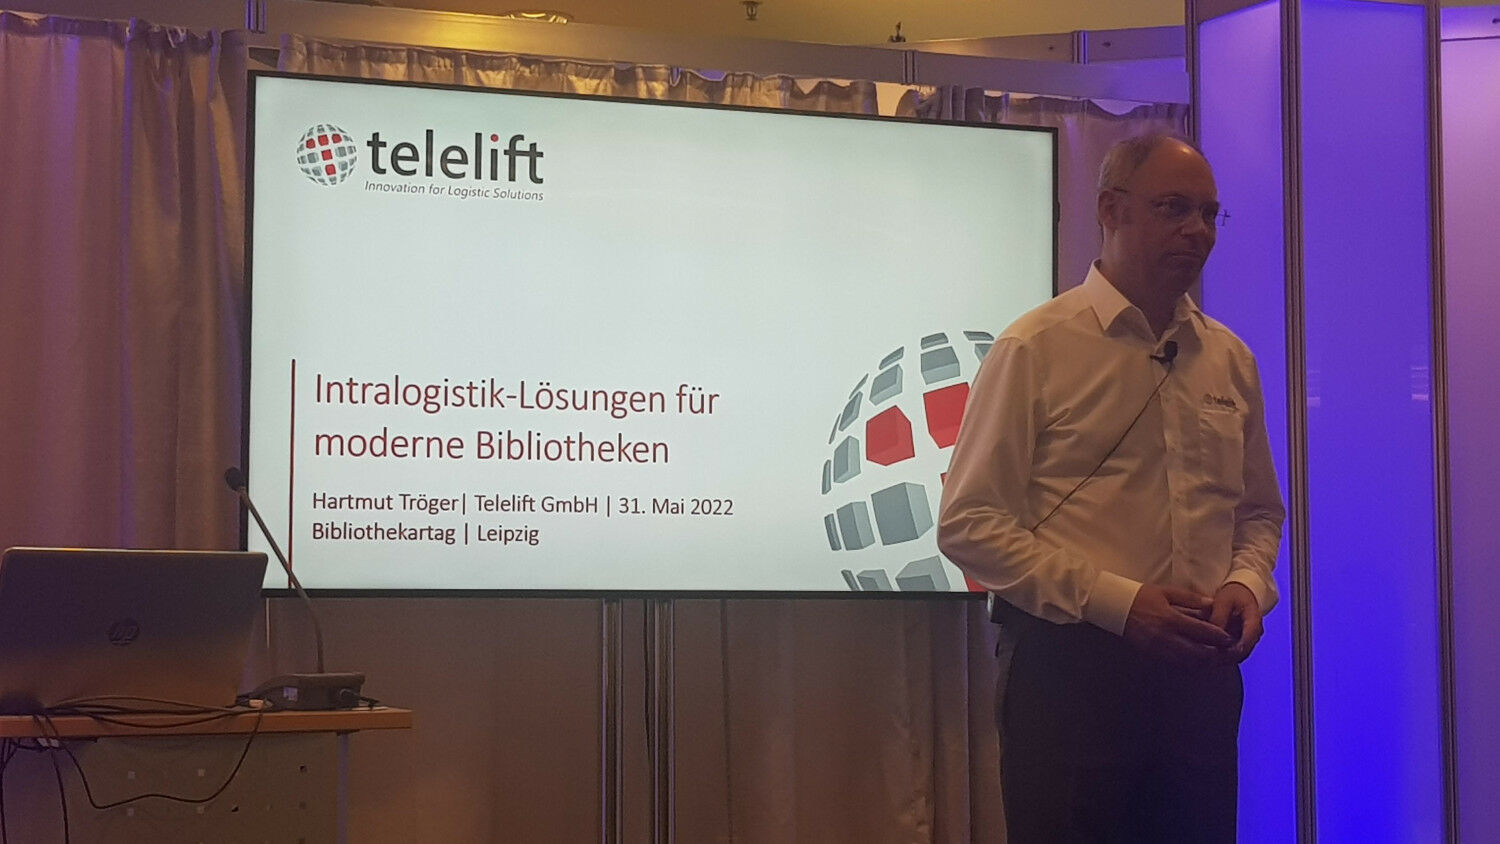 Presentation by Hartmut Tröger